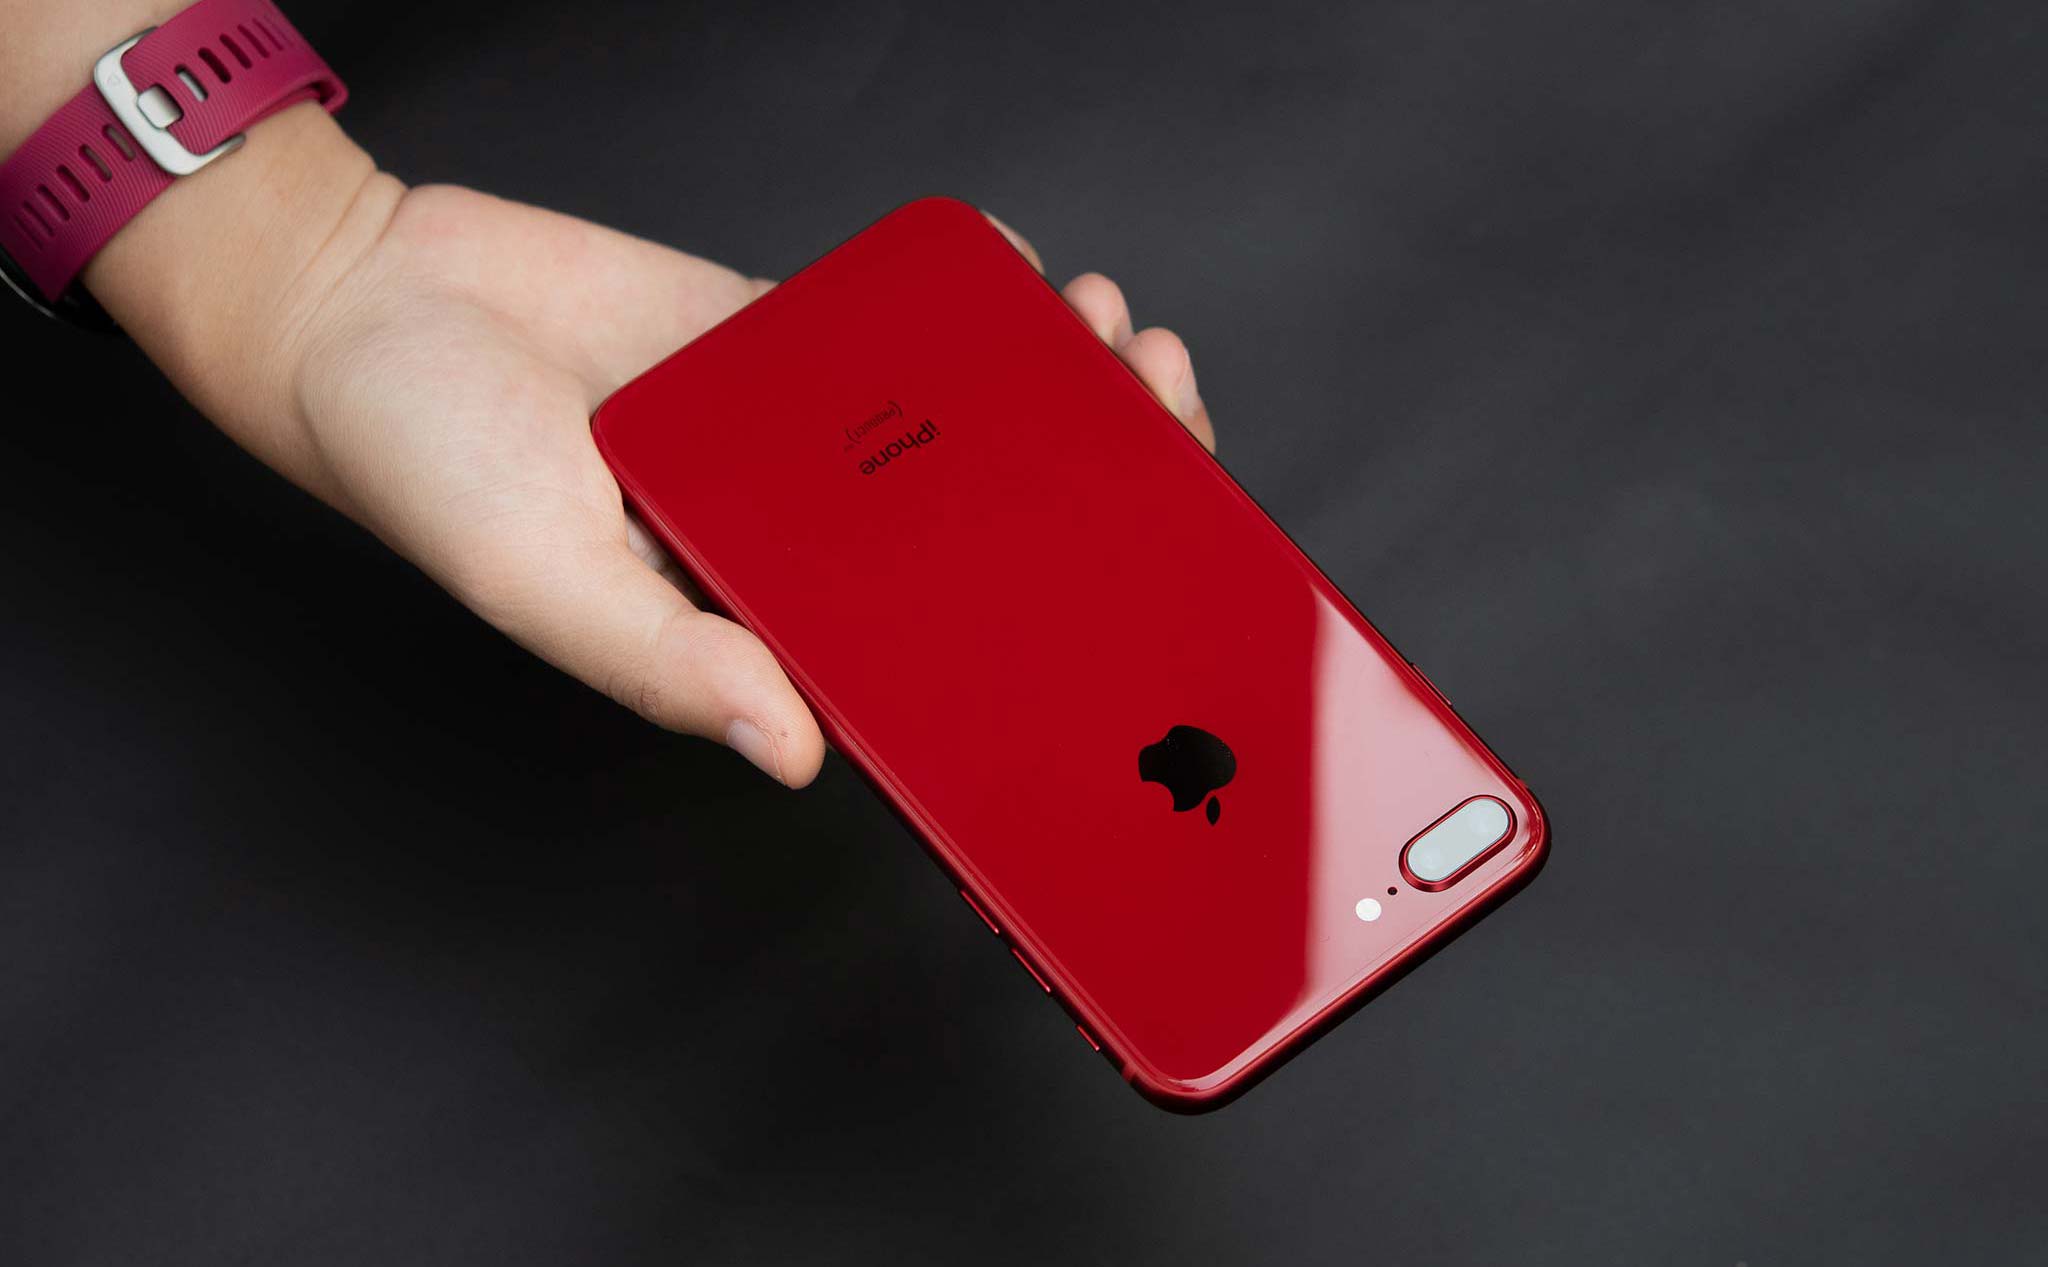 #Hoitinhte: Có 10 triệu nên mua iPhone nào bây giờ anh em?